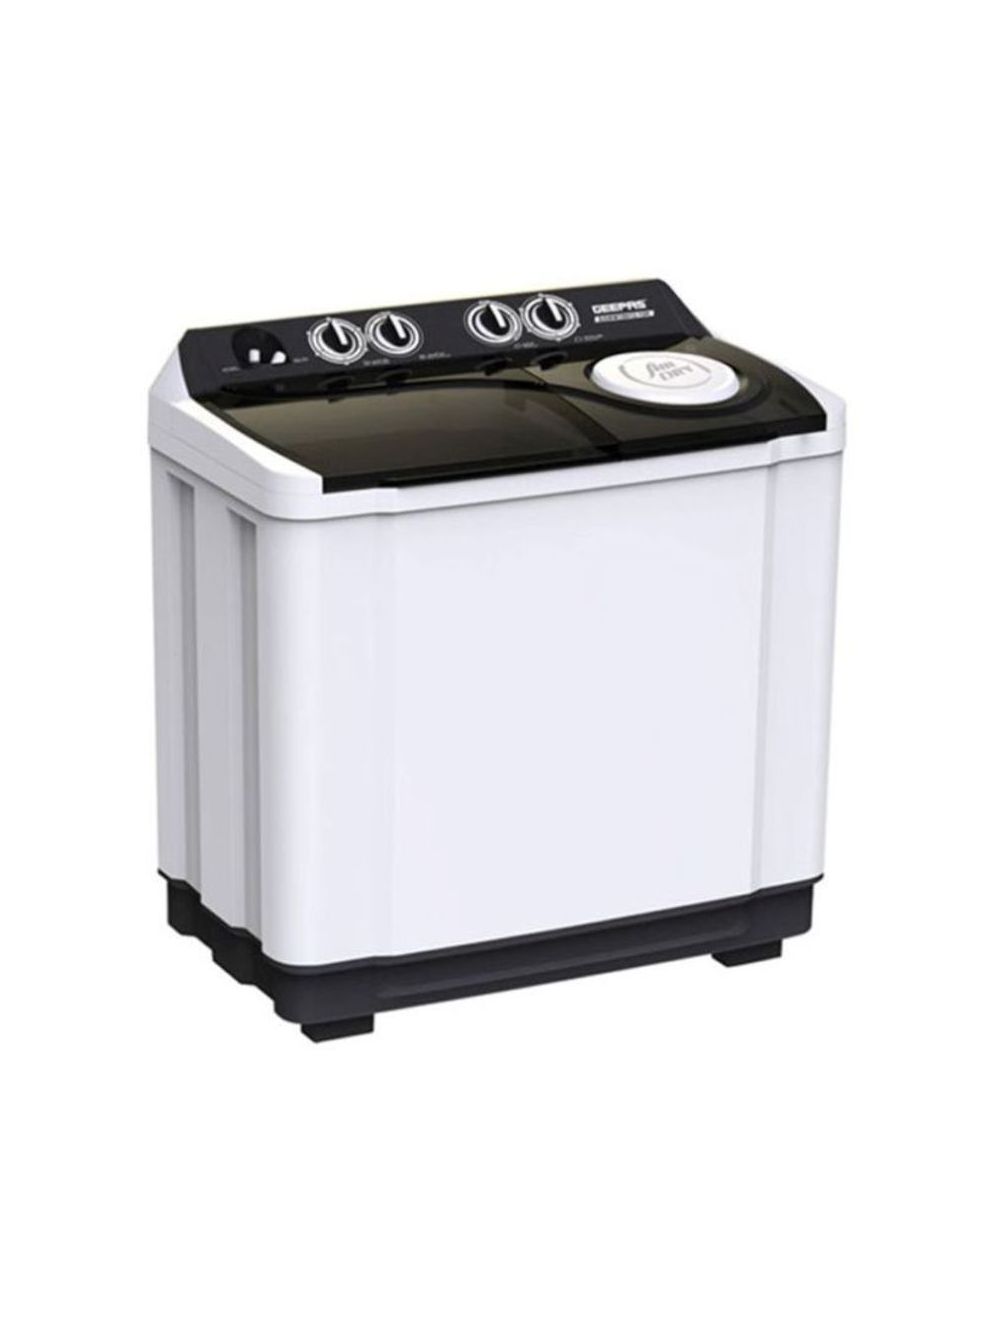 Geepas Freestanding Twin Tub Washing Machine 15 Kg - GSWM18012